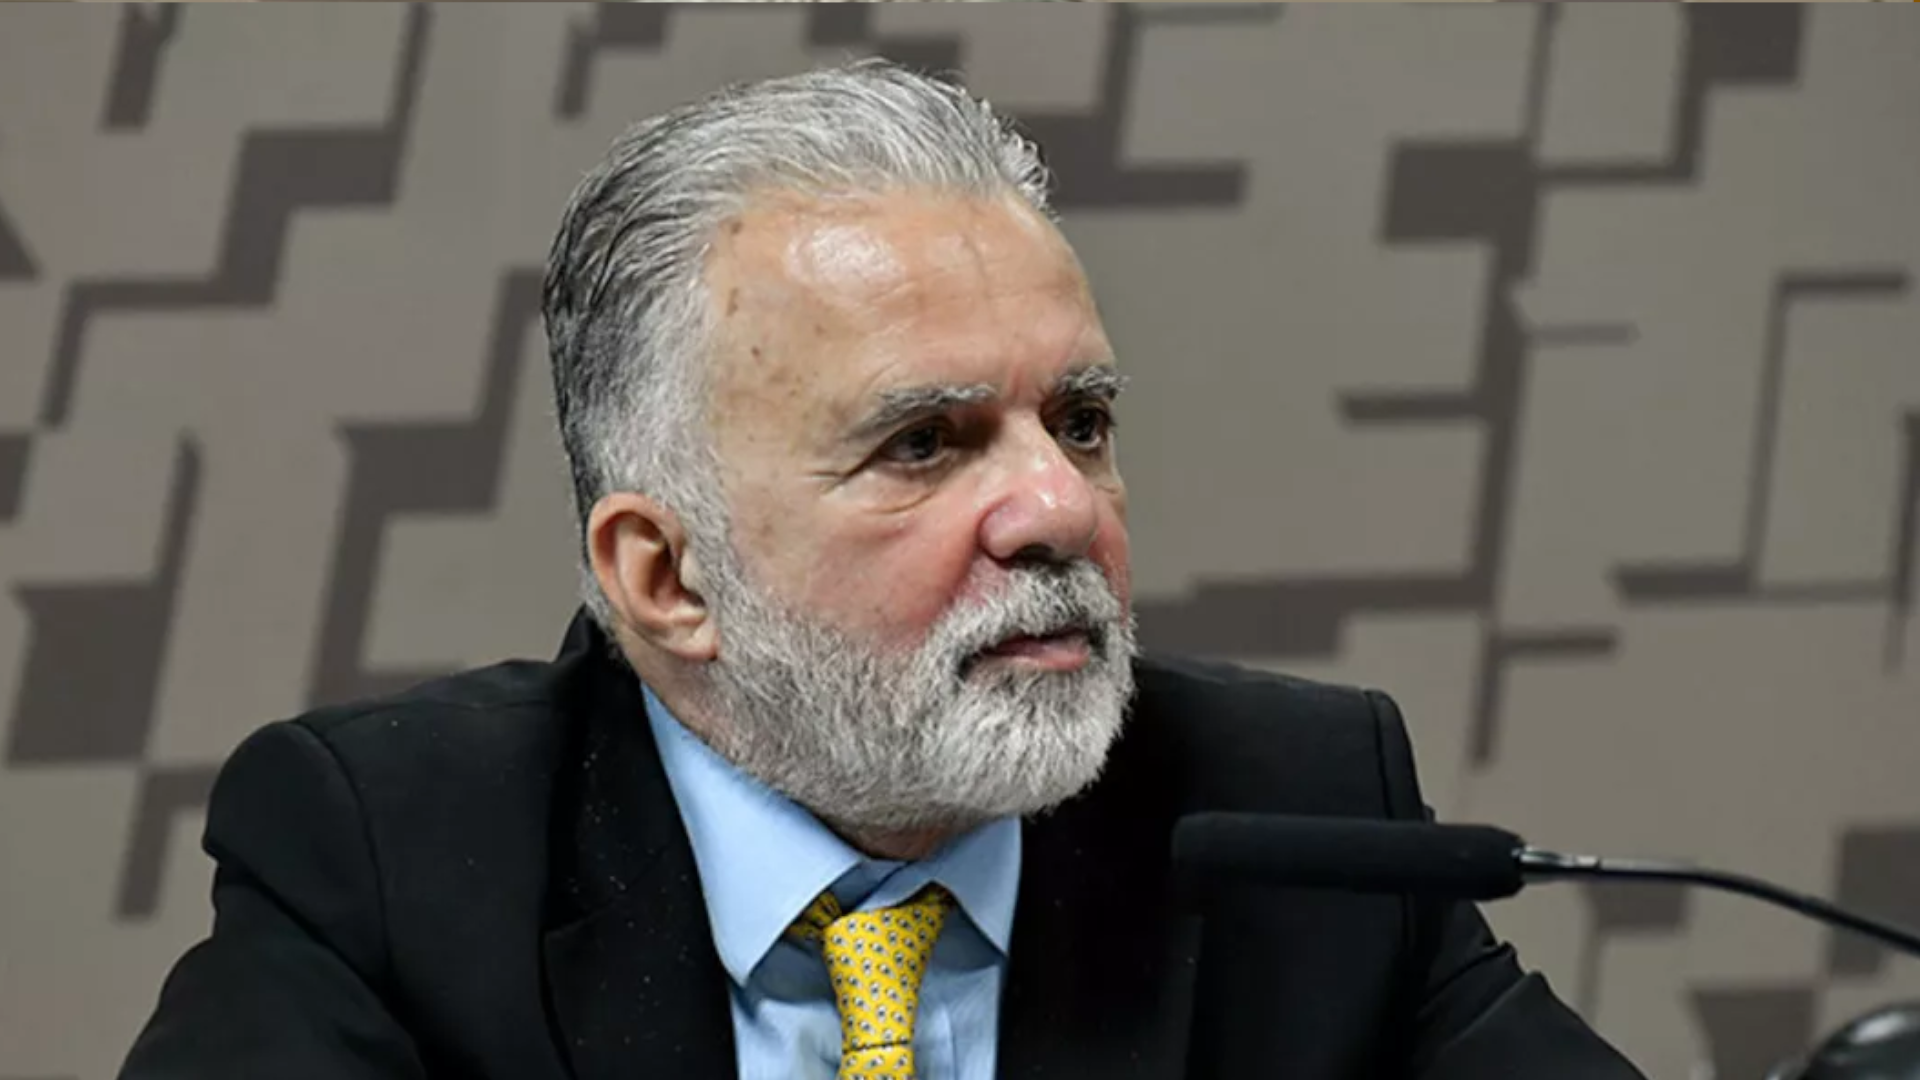 Embaixador brasileiro retirado de Israel; e a repercussão da derrubada de vetos